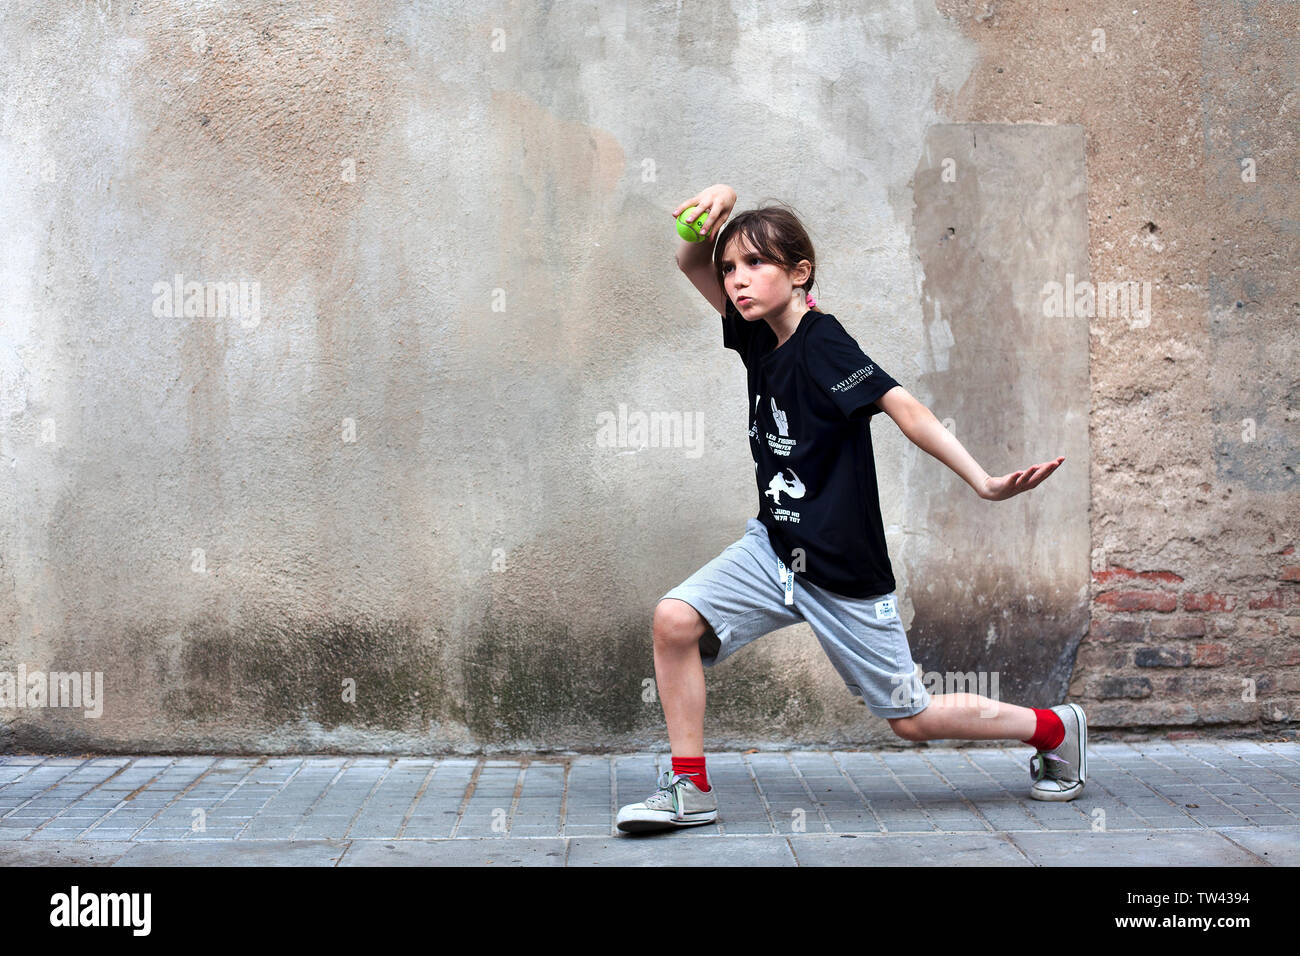 Junge in der Straße spielen mit einem Tennisball. Stockfoto